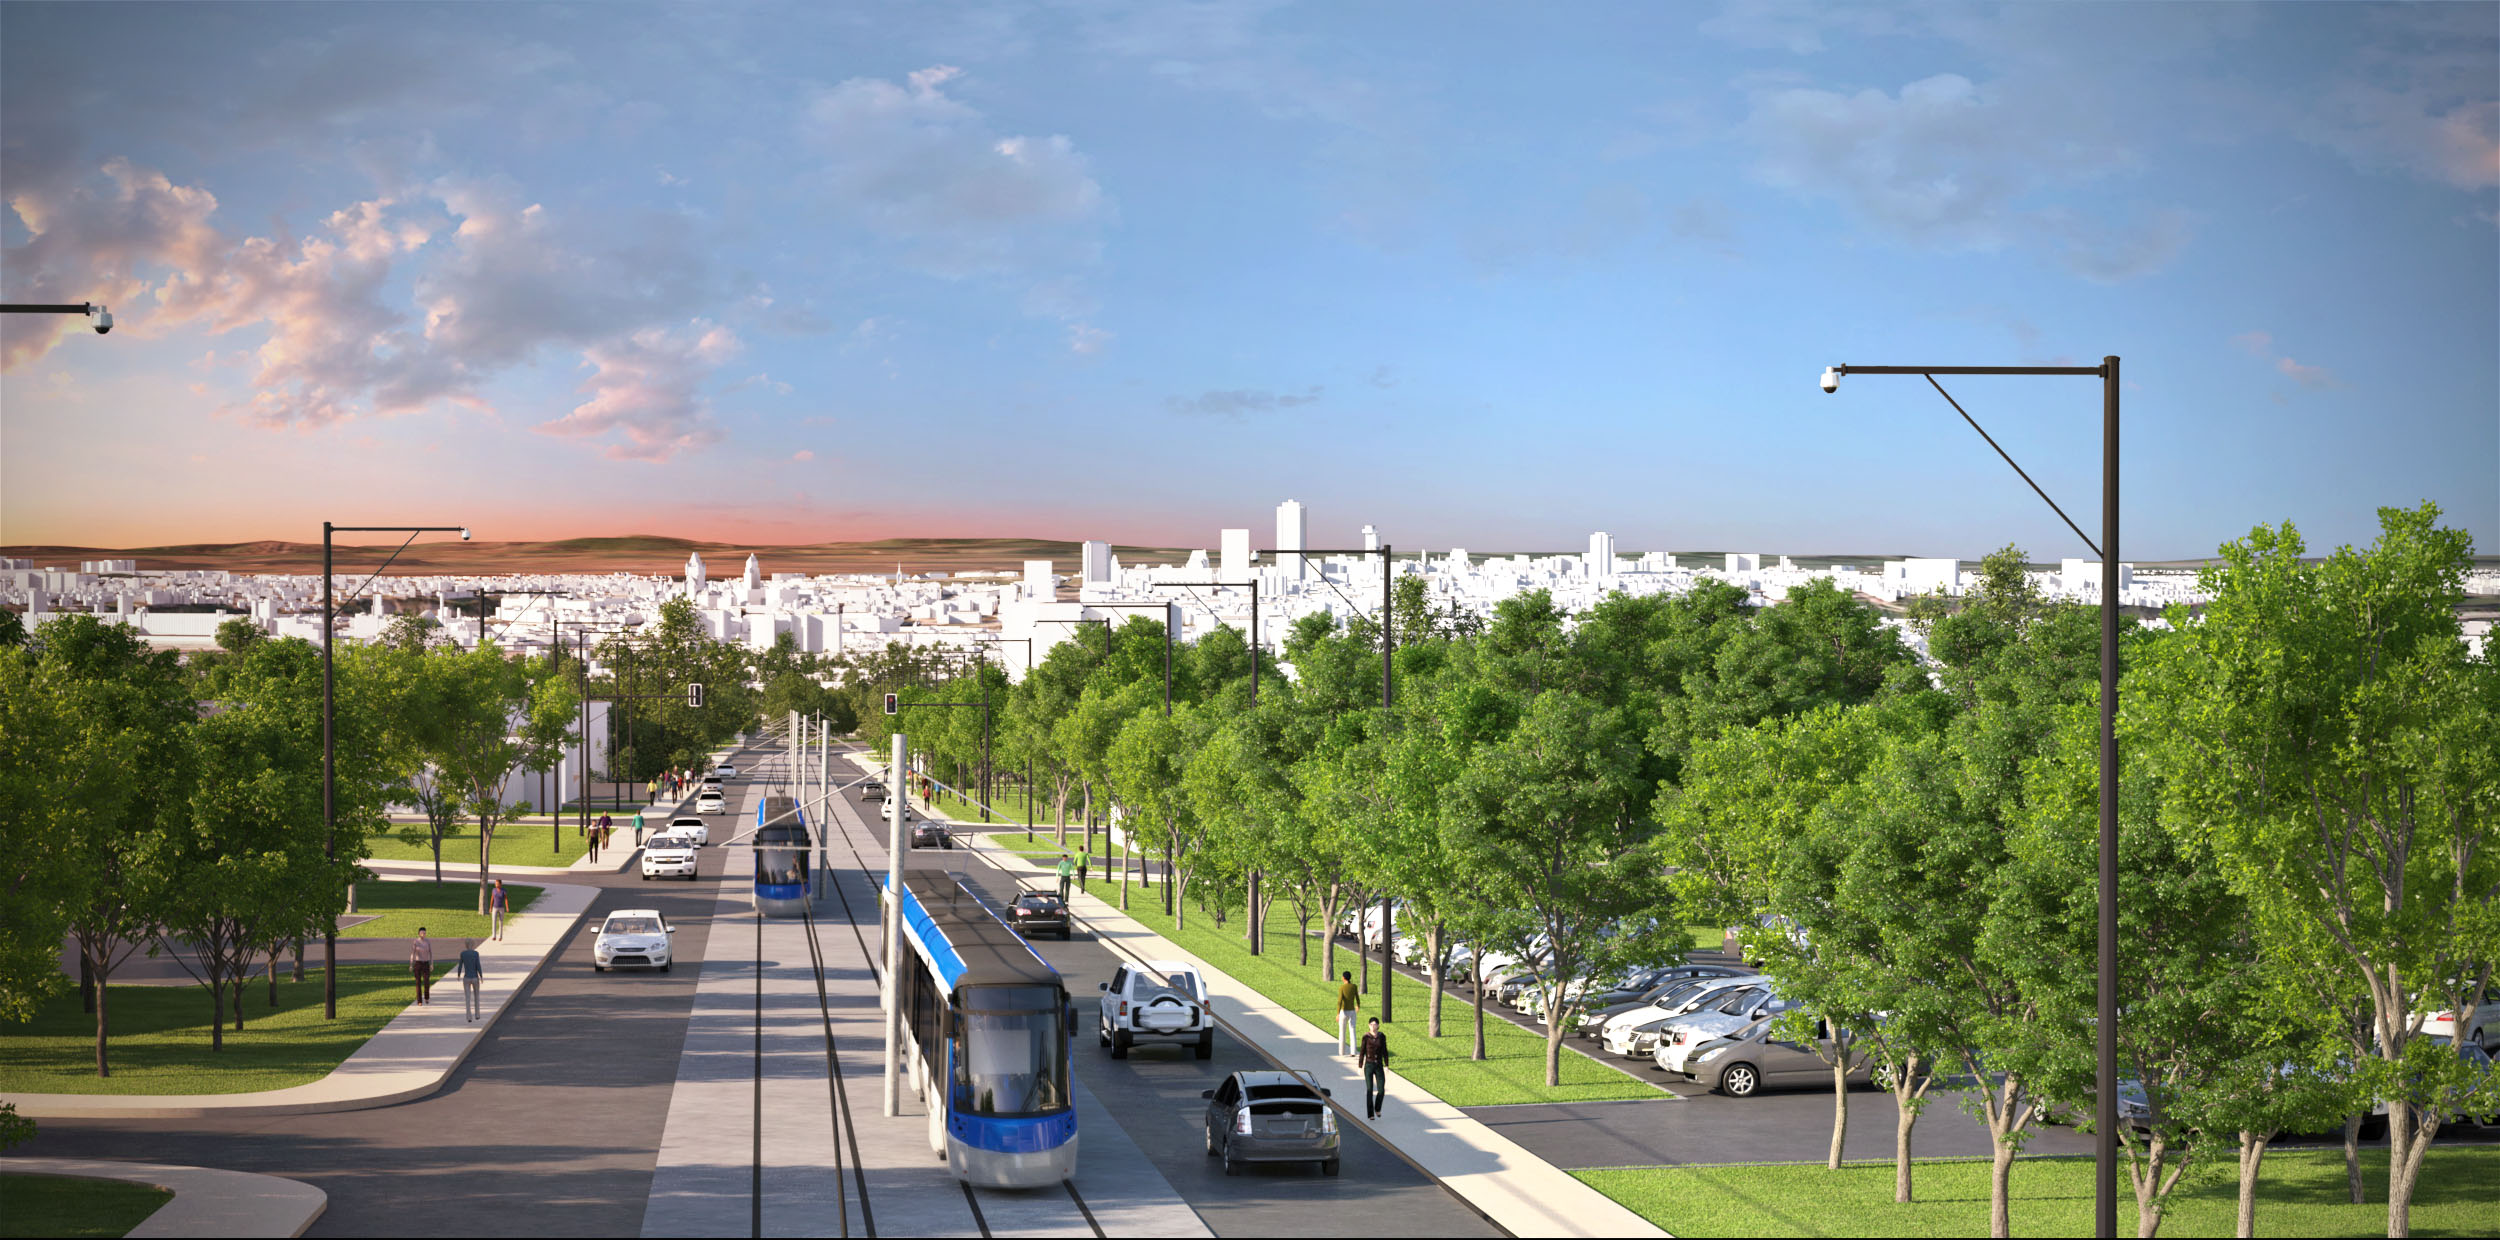 Maquette du tracé des tramways du projet de transport à Québec Photo: Réseau de transport de la Capitale